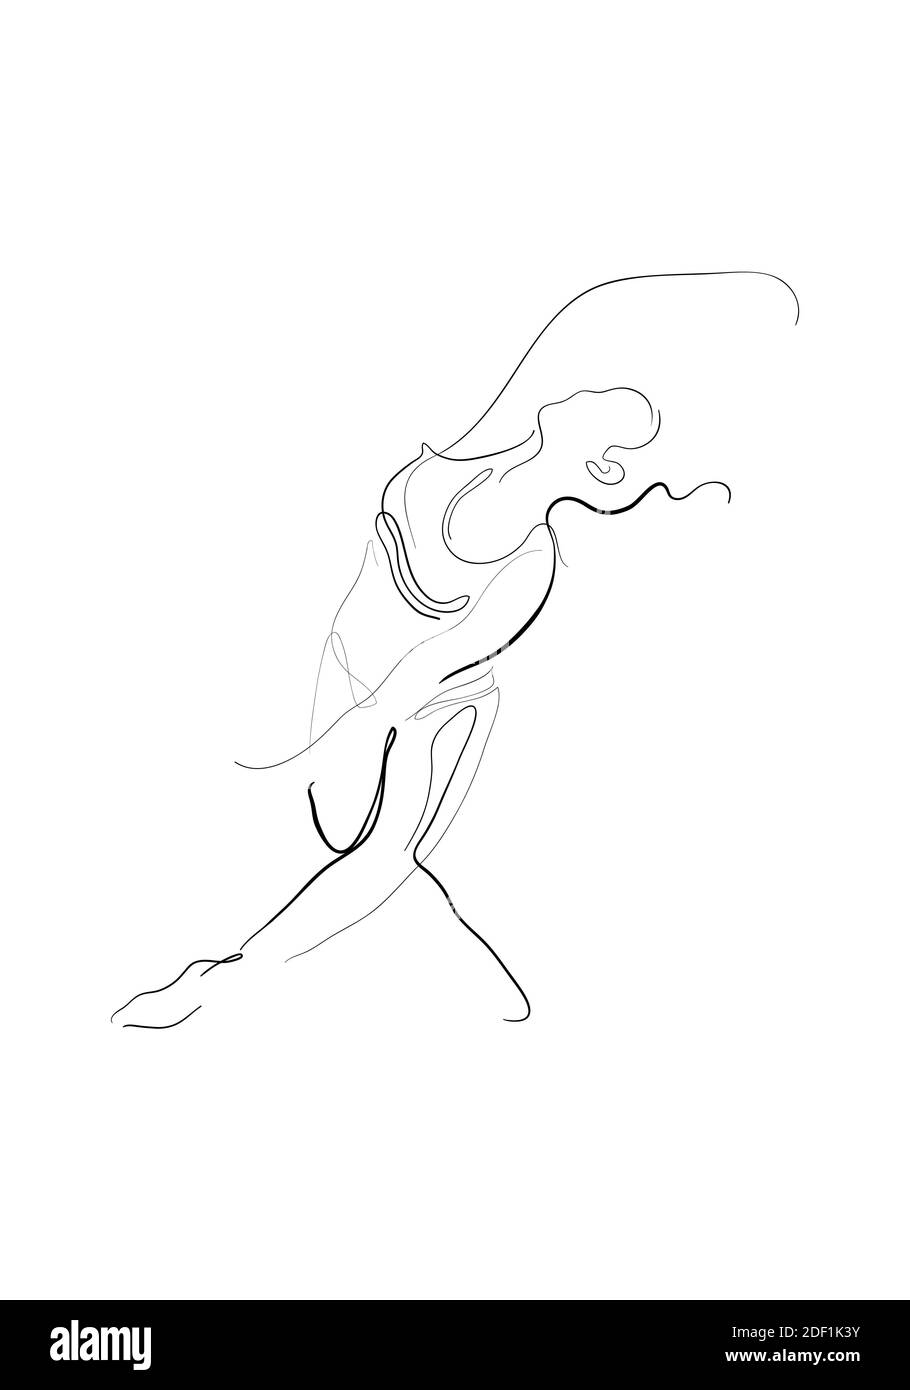 Dessin à la main illustration de la pose de Lasyasana ou personnage femme debout dans une danse gracieuse pose de yoga. Banque D'Images